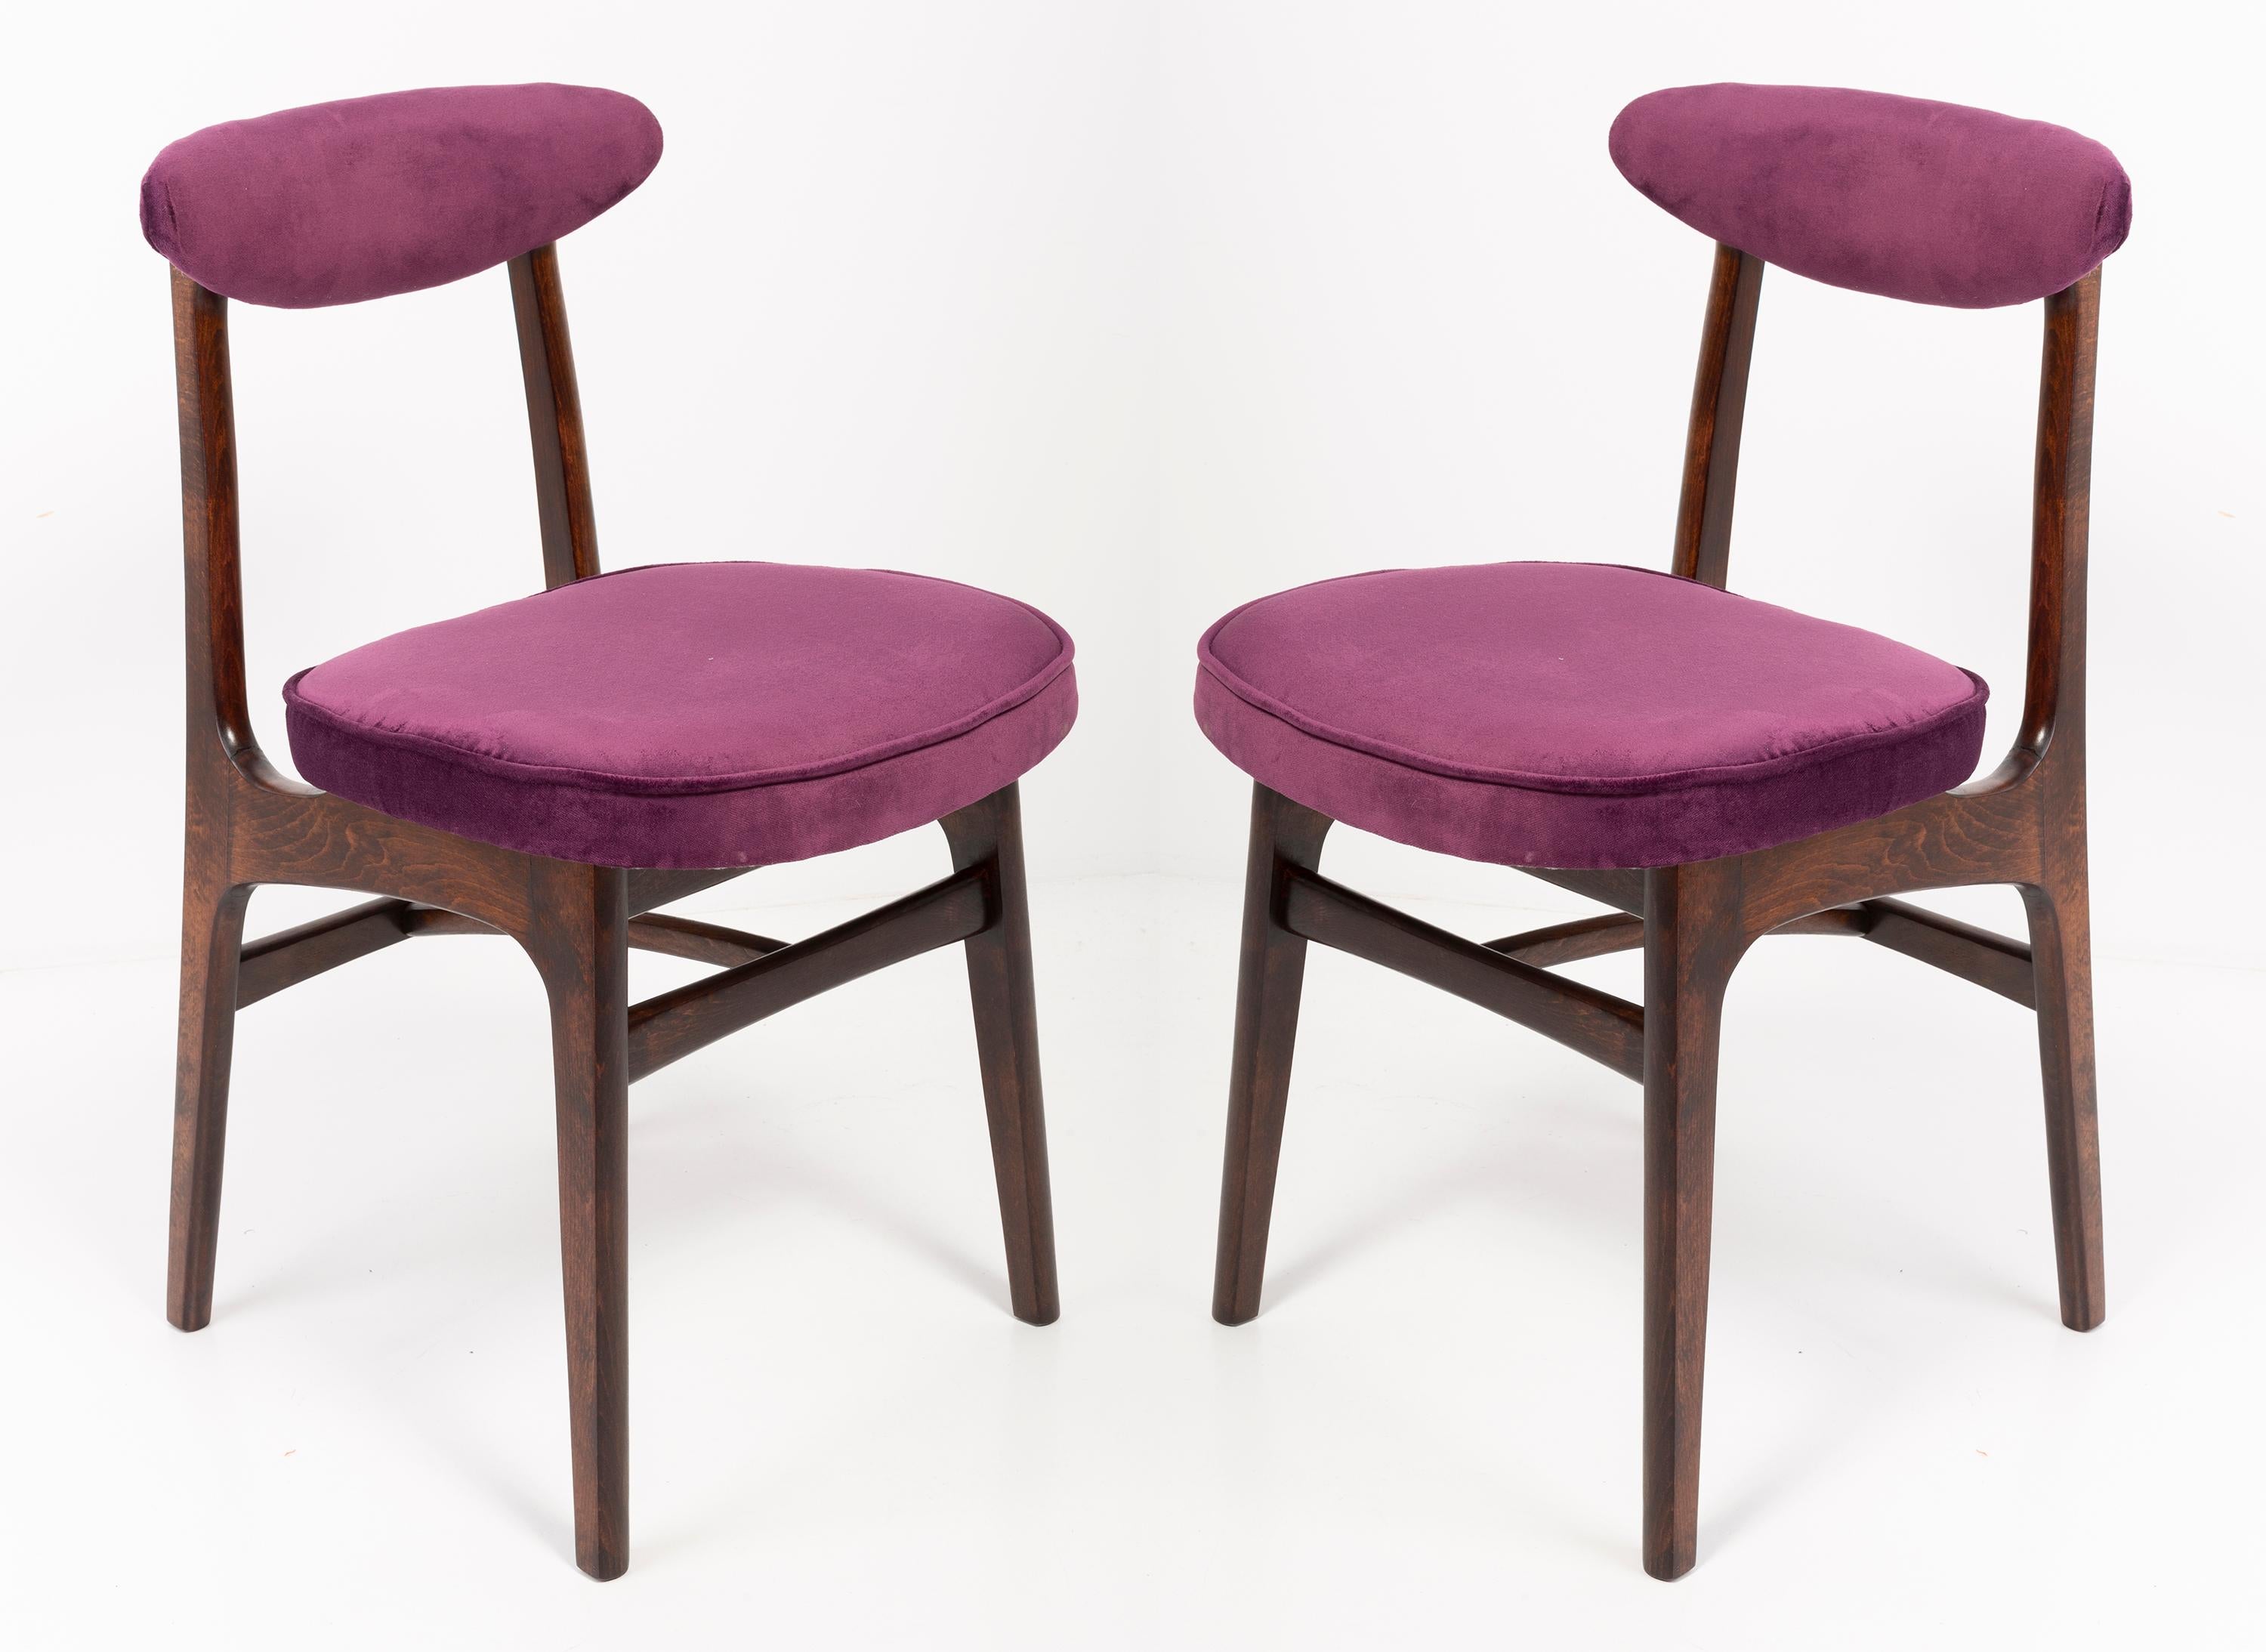 Douze chaises conçues par le professeur Rajmund Halas. Il a été fabriqué en bois de hêtre. Les chaises ont subi une rénovation complète de leur rembourrage et les boiseries ont été rafraîchies. Les sièges et les dossiers étaient habillés d'un tissu